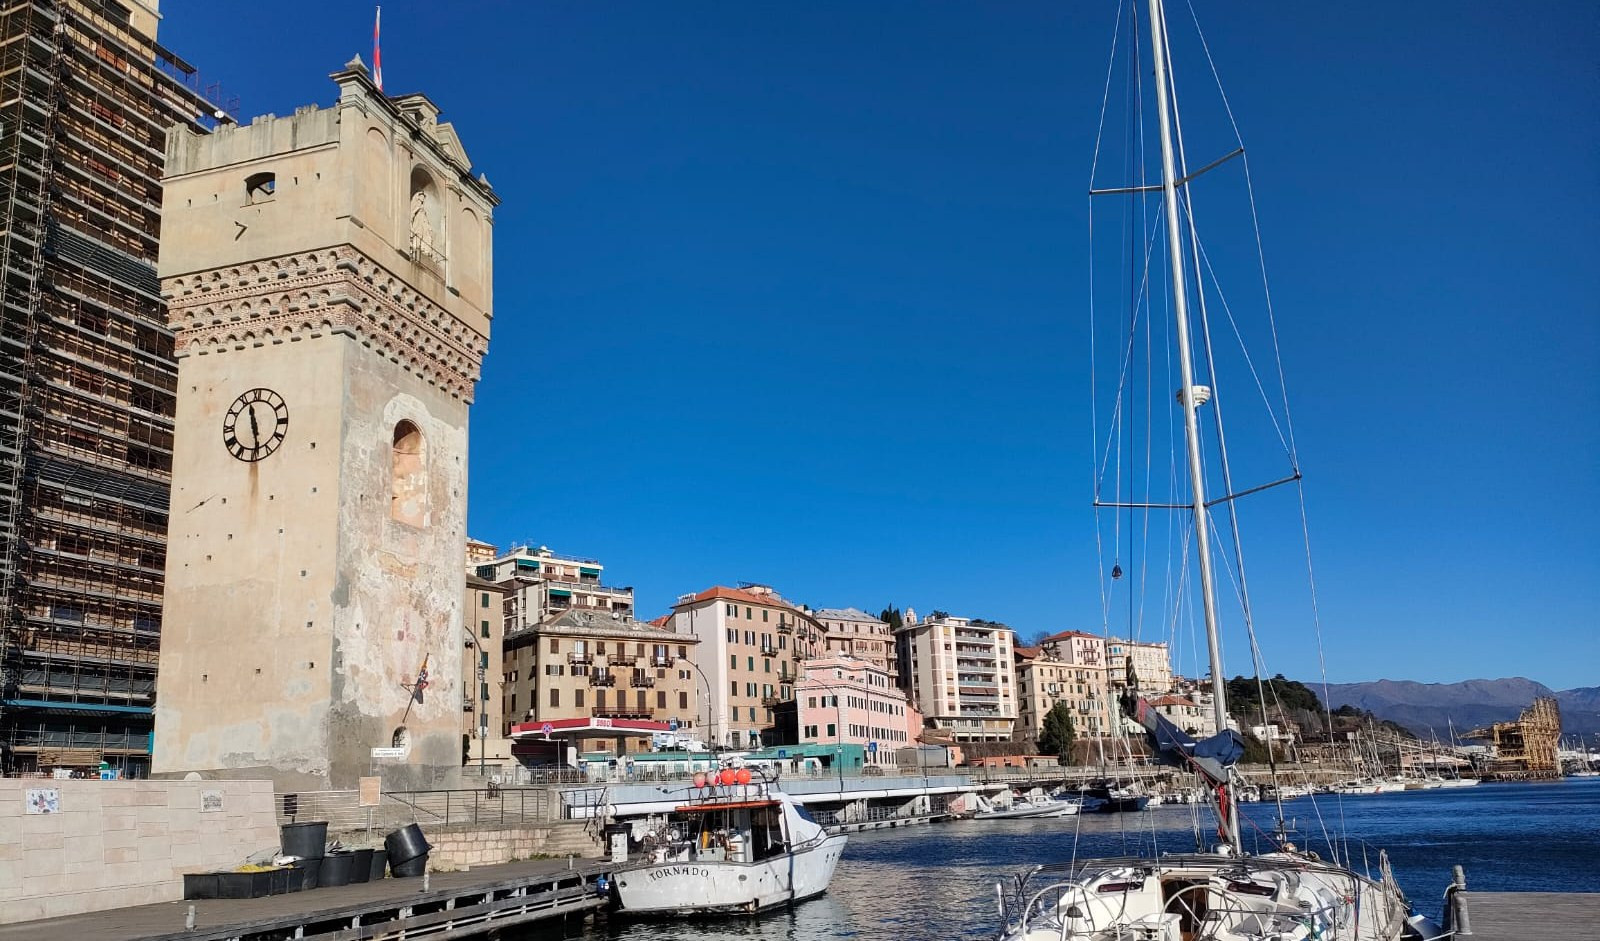 Inchiesta: Savona, il turismo risorsa per i giovani ma troppi vanno via